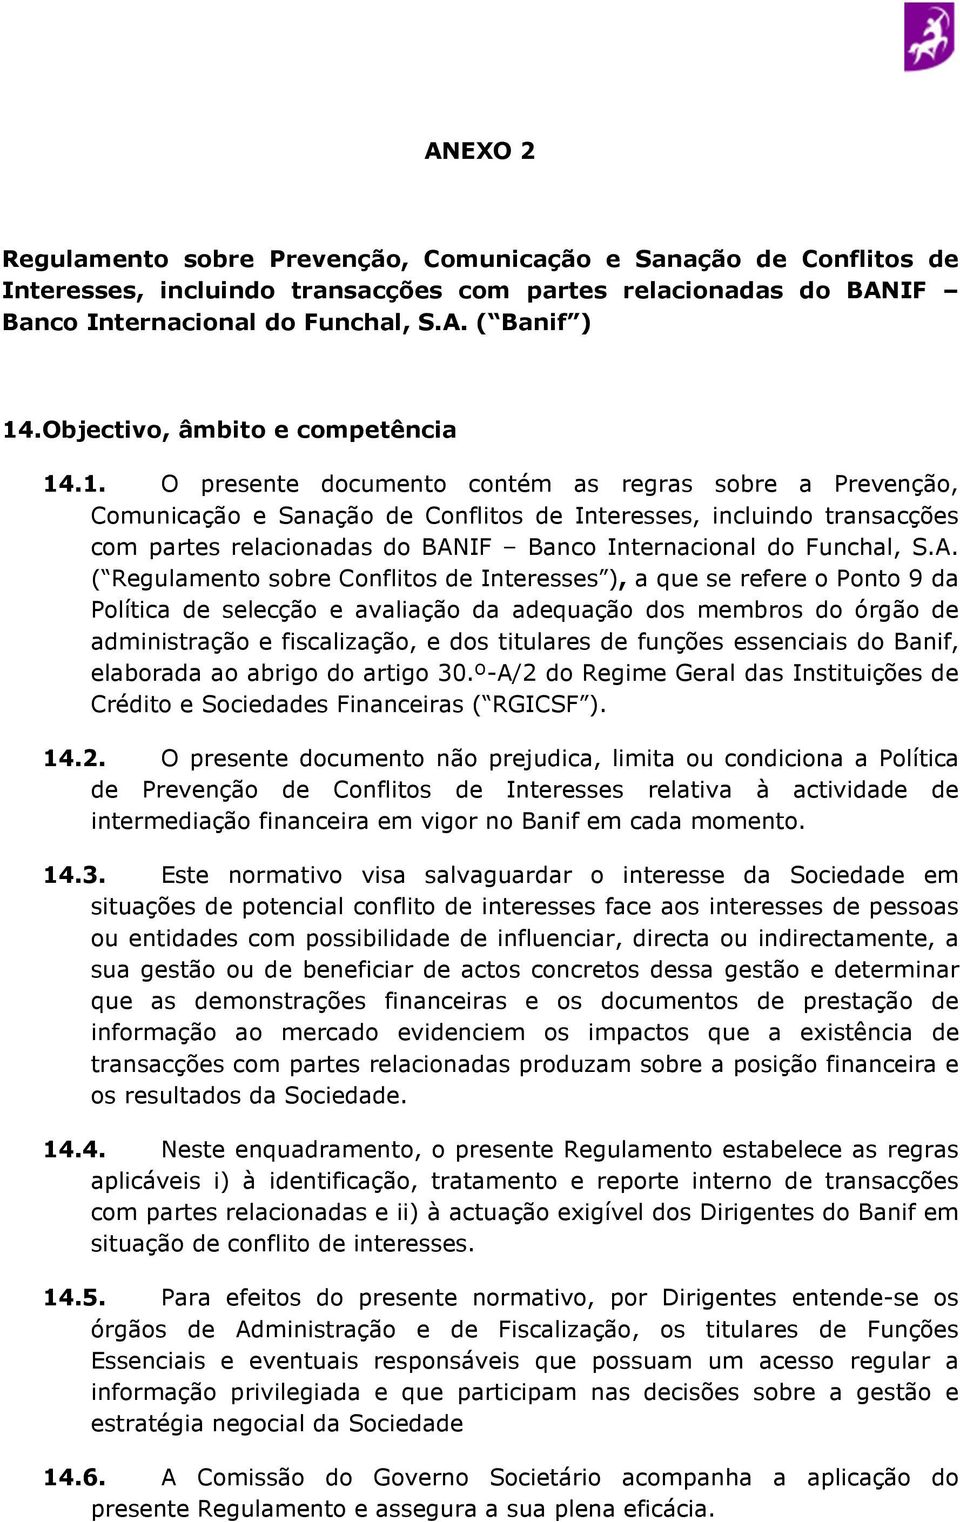 .1. O presente documento contém as regras sobre a Prevenção, Comunicação e Sanação de Conflitos de Interesses, incluindo transacções com partes relacionadas do BANIF Banco Internacional do Funchal, S.